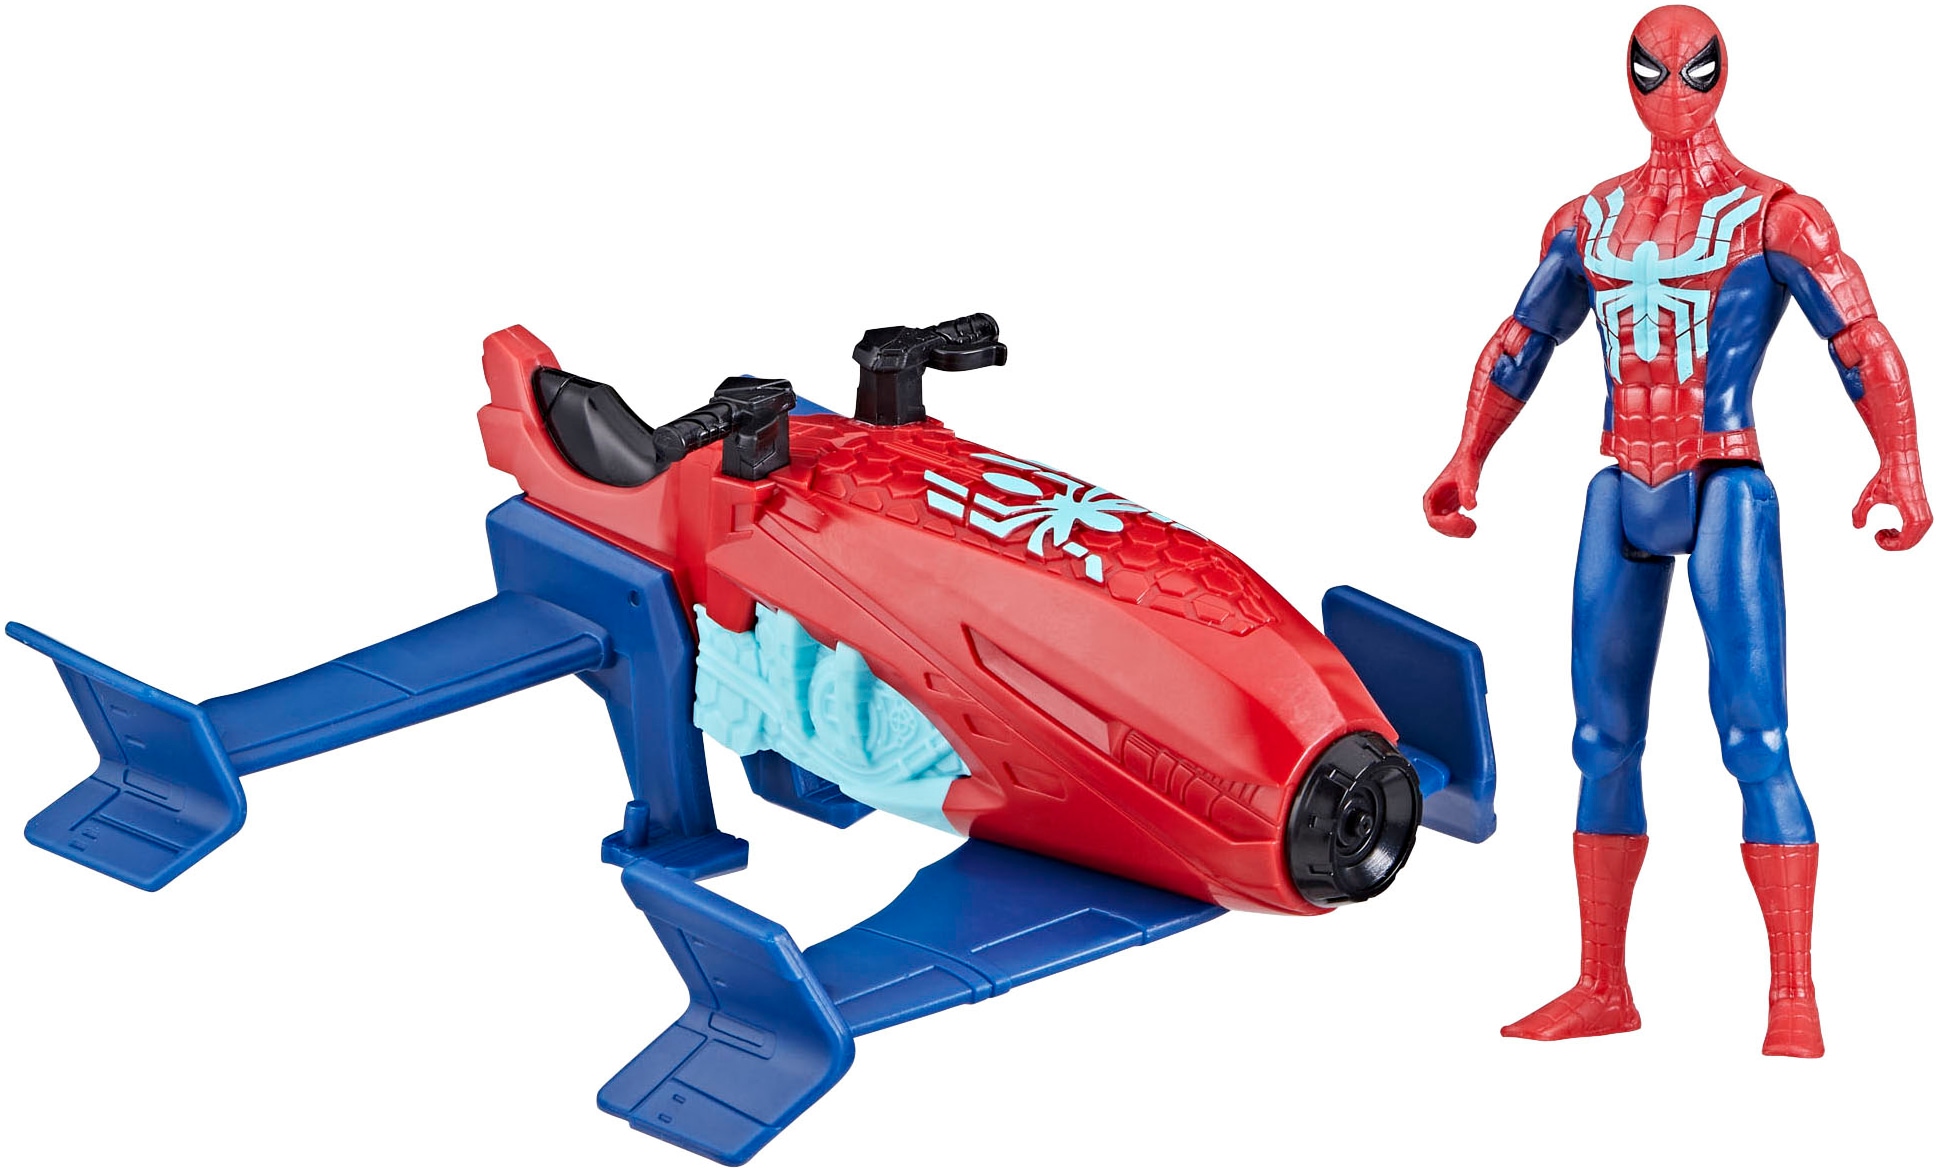 Actionfigur »Marvel Spider-Man, Spider-Man Jet Splasher«, Spritzt Wasser